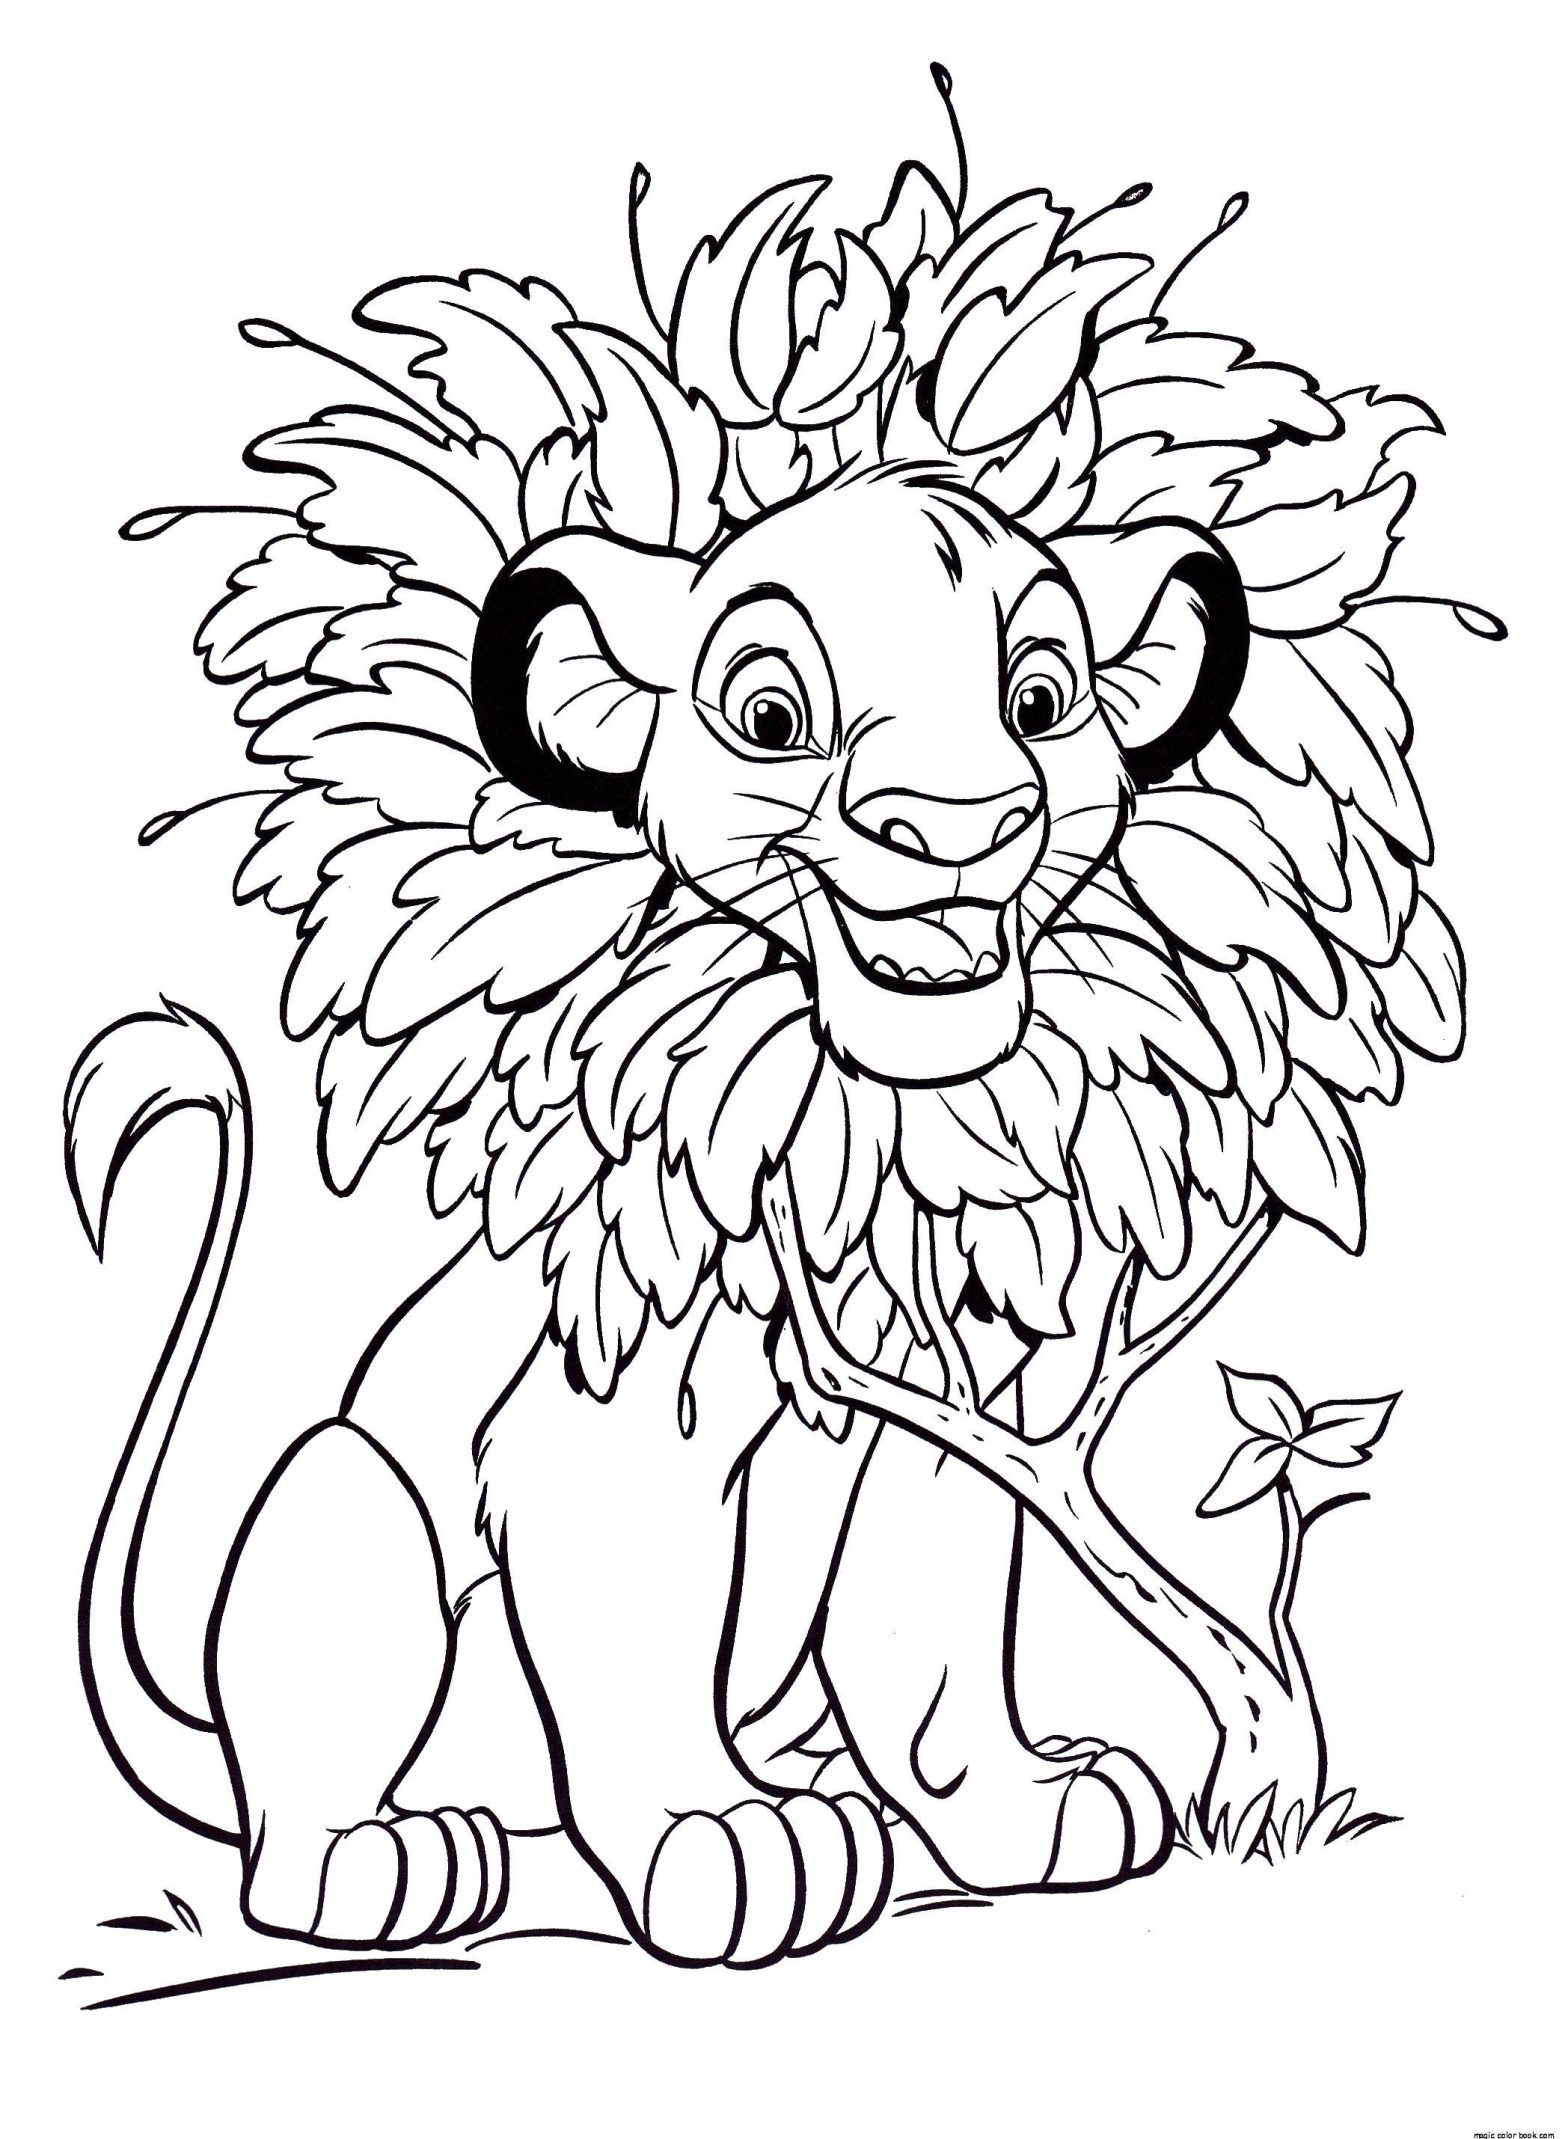 Раскраска Король Лев Симба с венком на голове (Симба, весело)